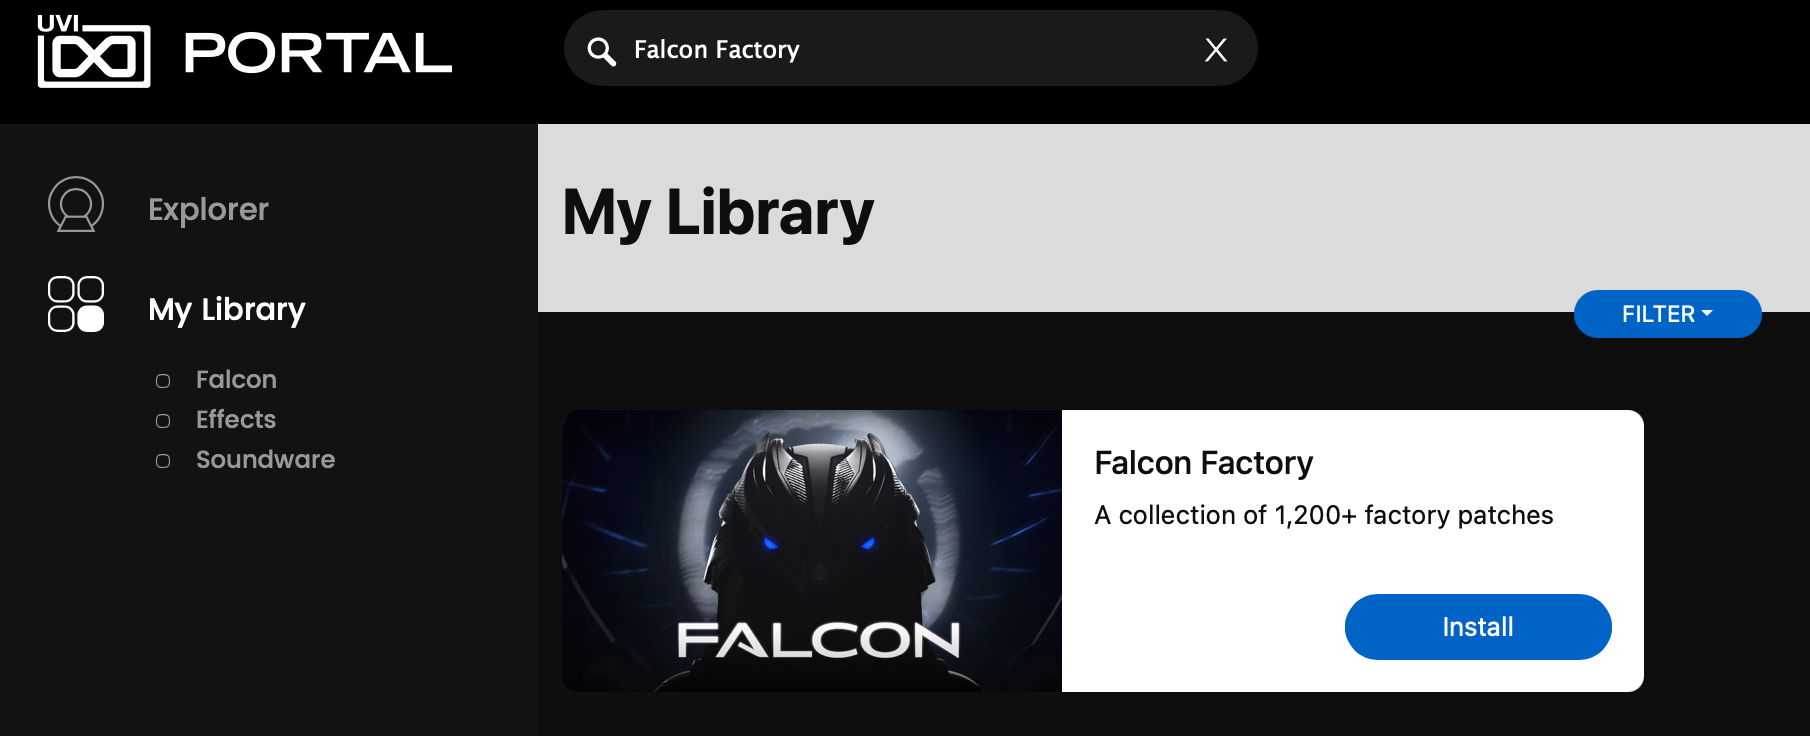 Portal2_Install_FalconFactory.png